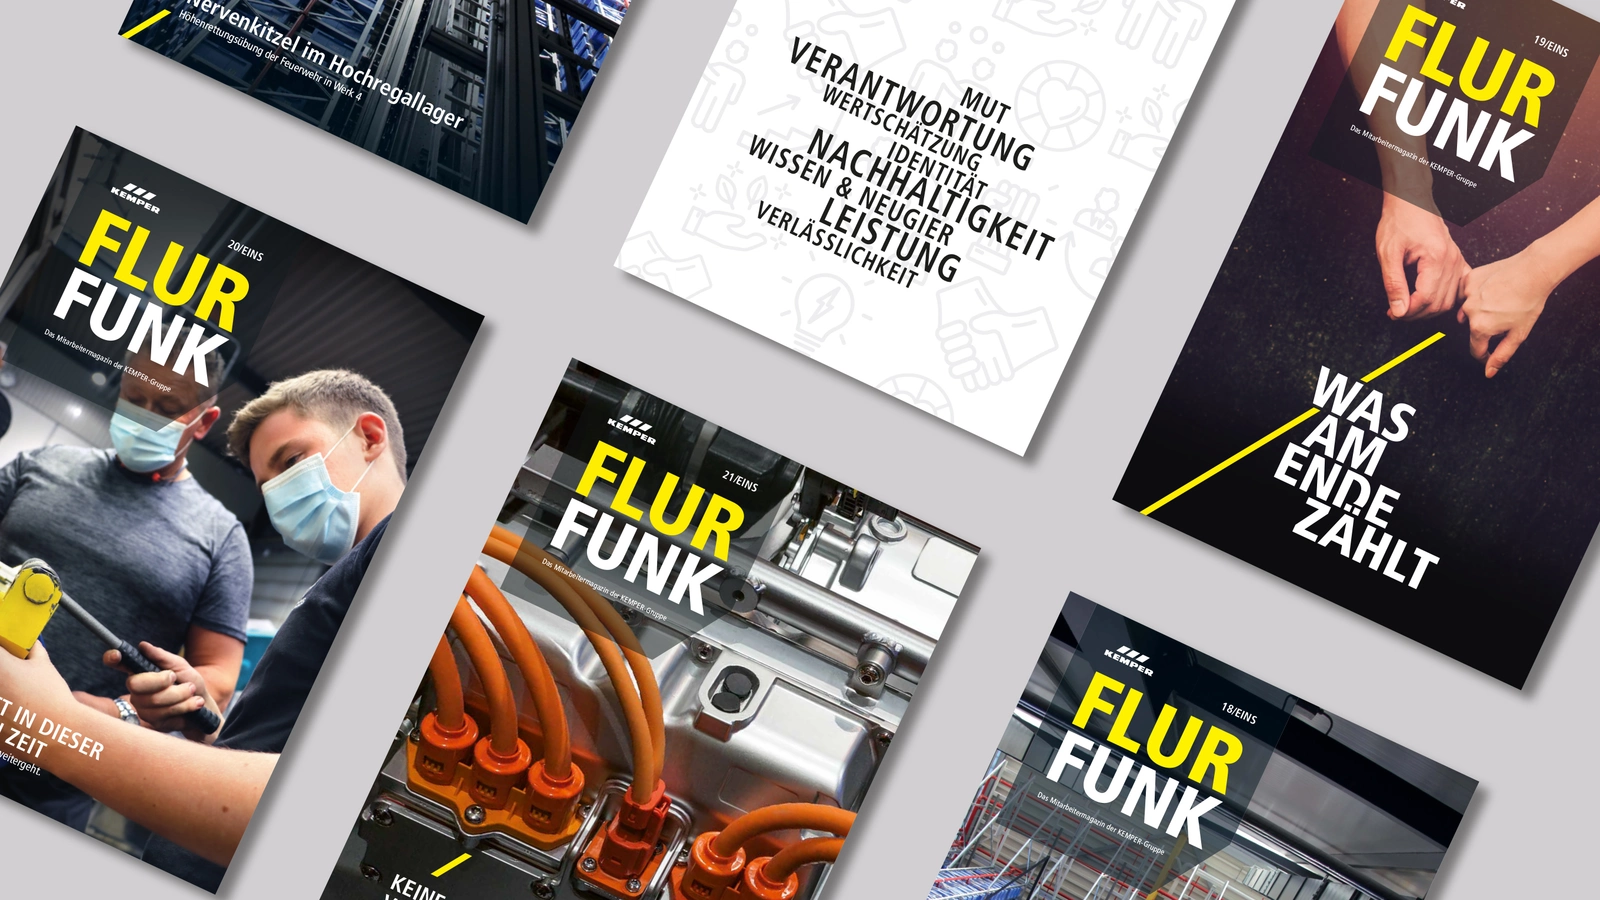 Man sieht verschiedene Cover des Flurfunk-Magazins der Firma Kemper. 